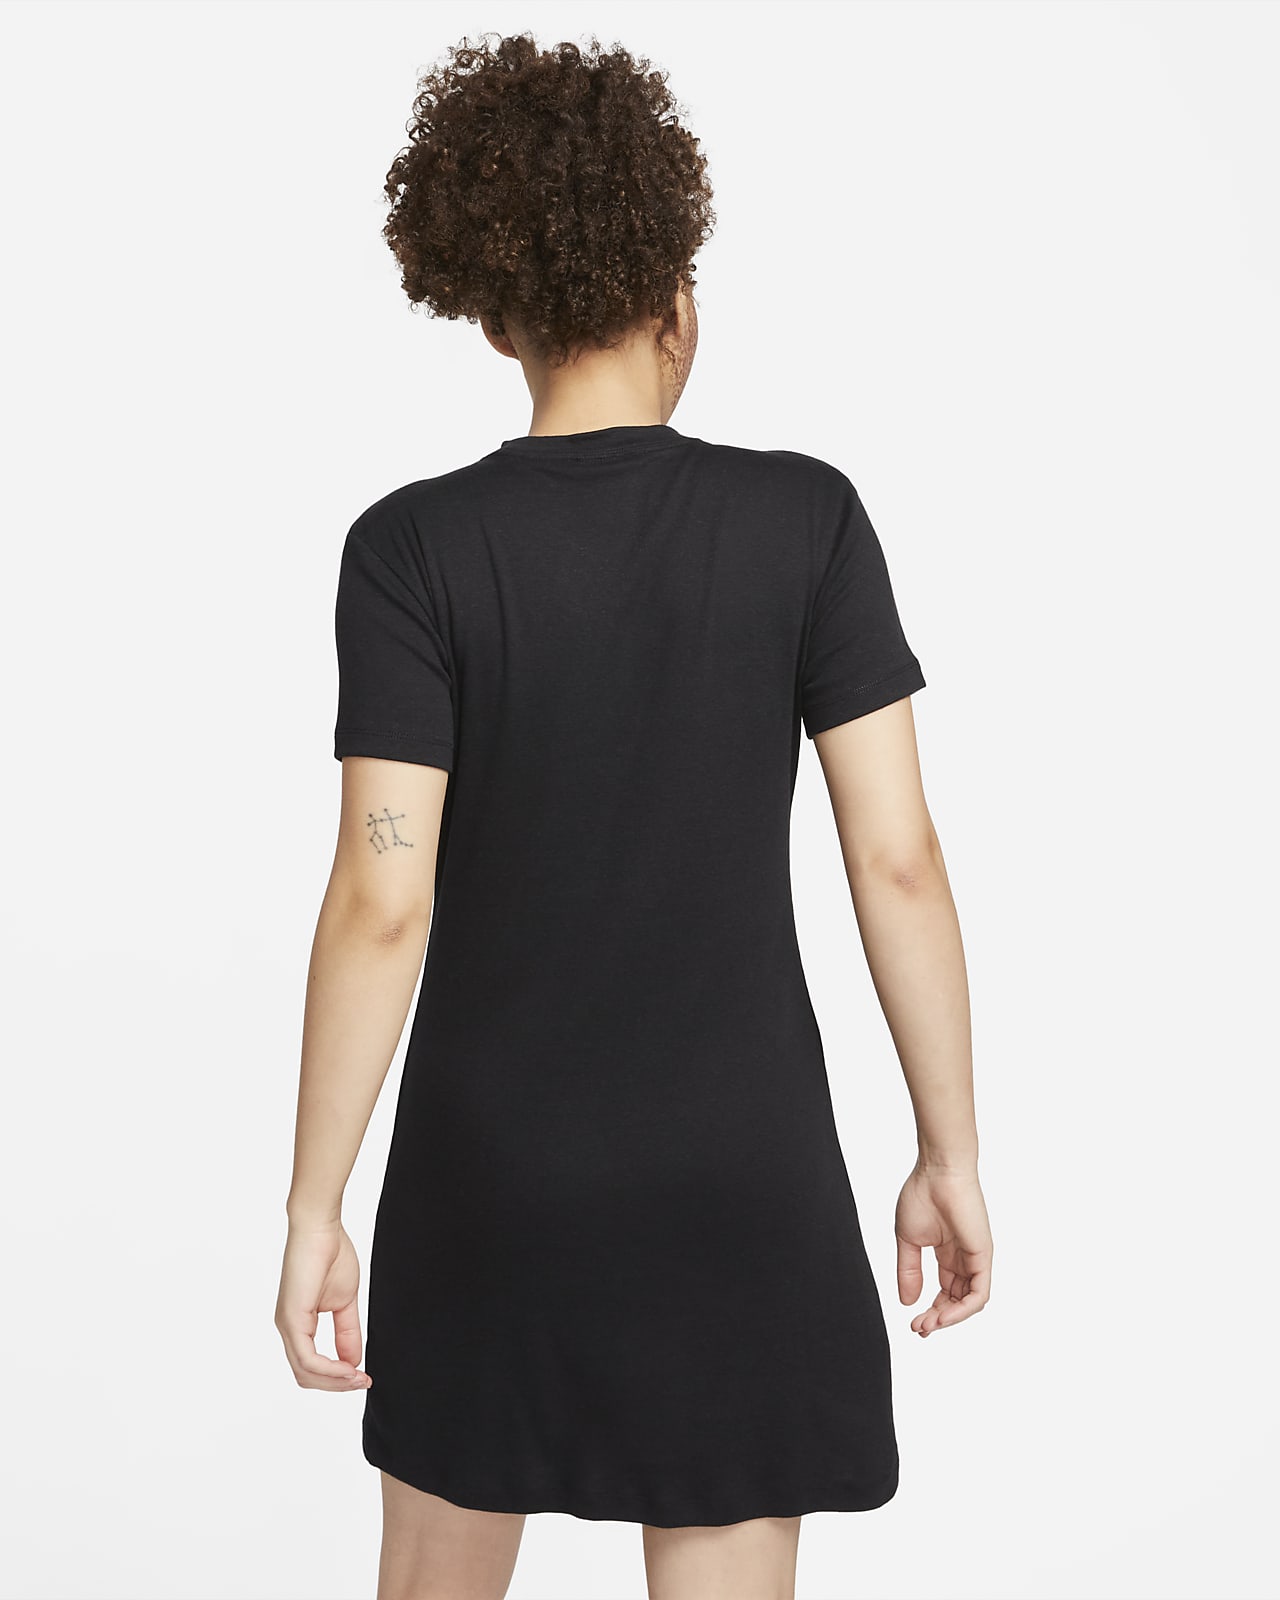 Nike Sportswear Women's Gingham Short-Sleeve Dress. Nike ID